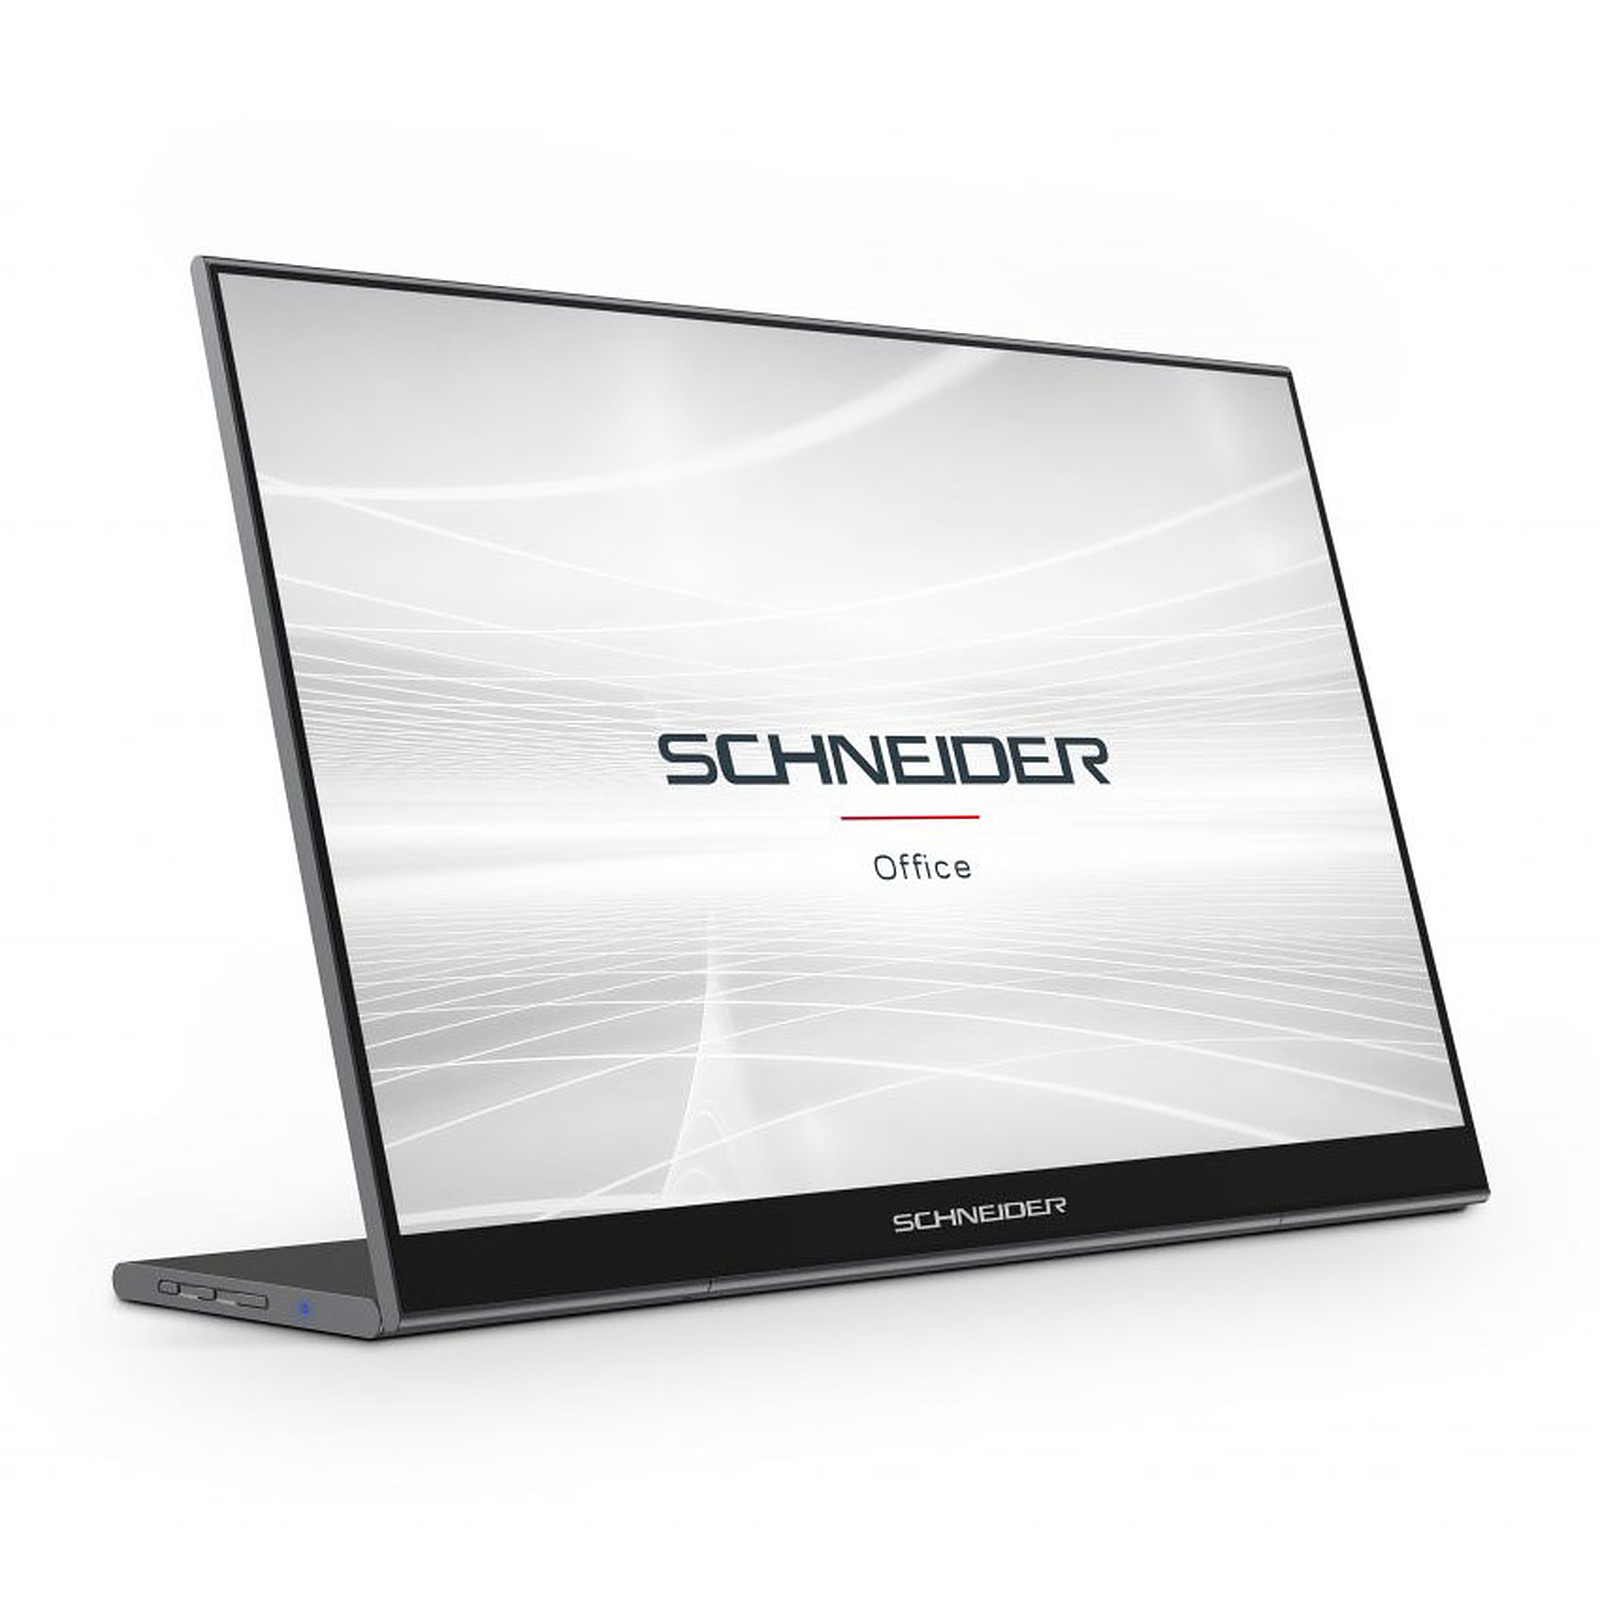 Schneider 15.6" LED - SC16-PM1F - Ecran PC Schneider